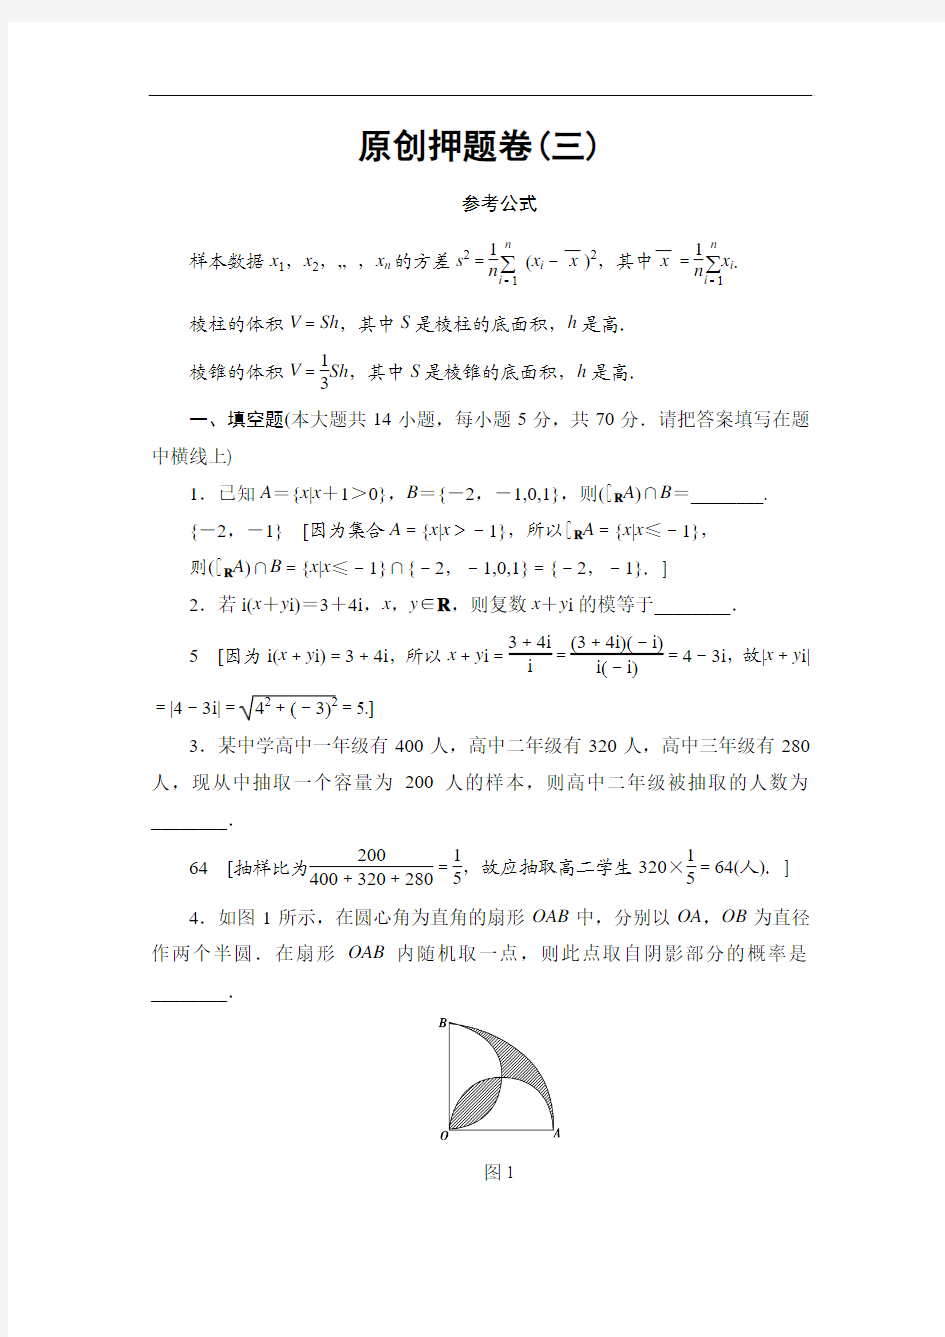 【高考模拟】江苏省2017年高考考前押题卷数学文科试题(三)含答案